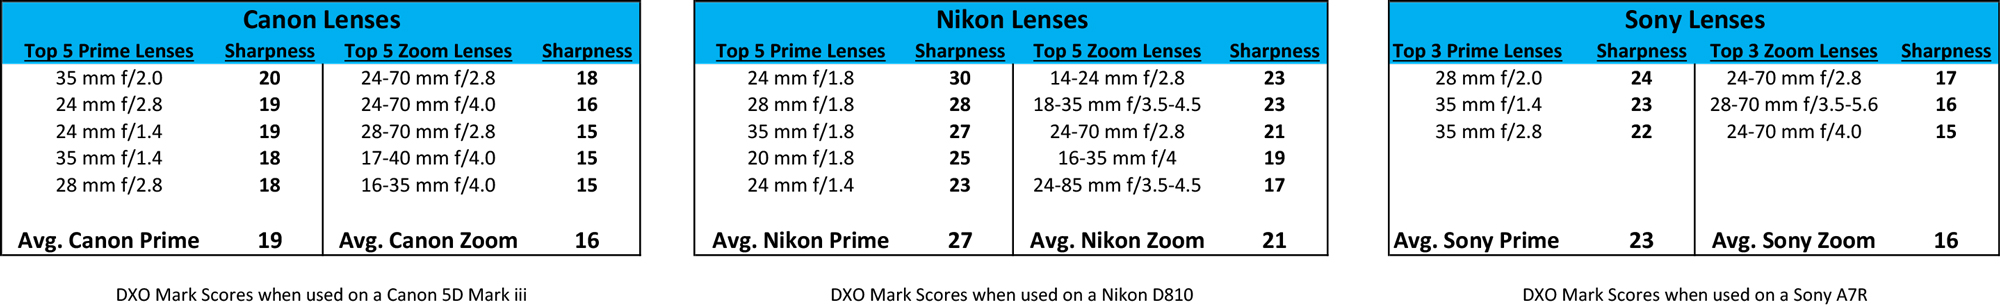 Sharpness of Prime Lenses versus Zoom Lenses